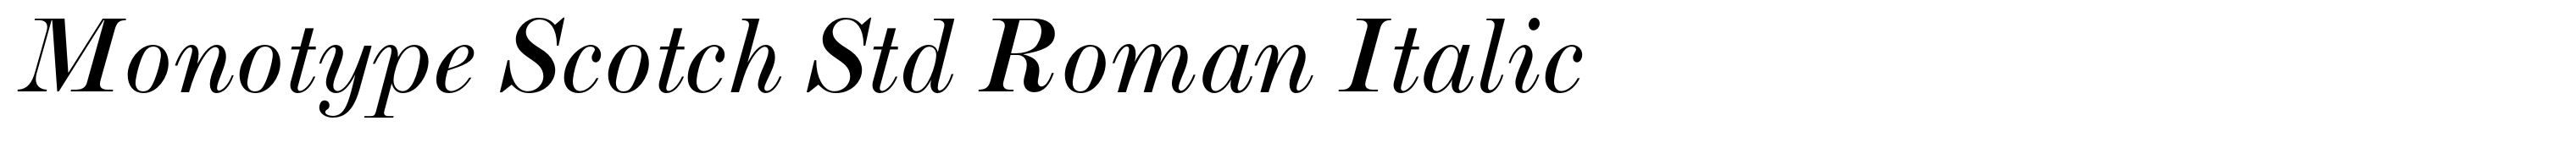 Monotype Scotch Std Roman Italic